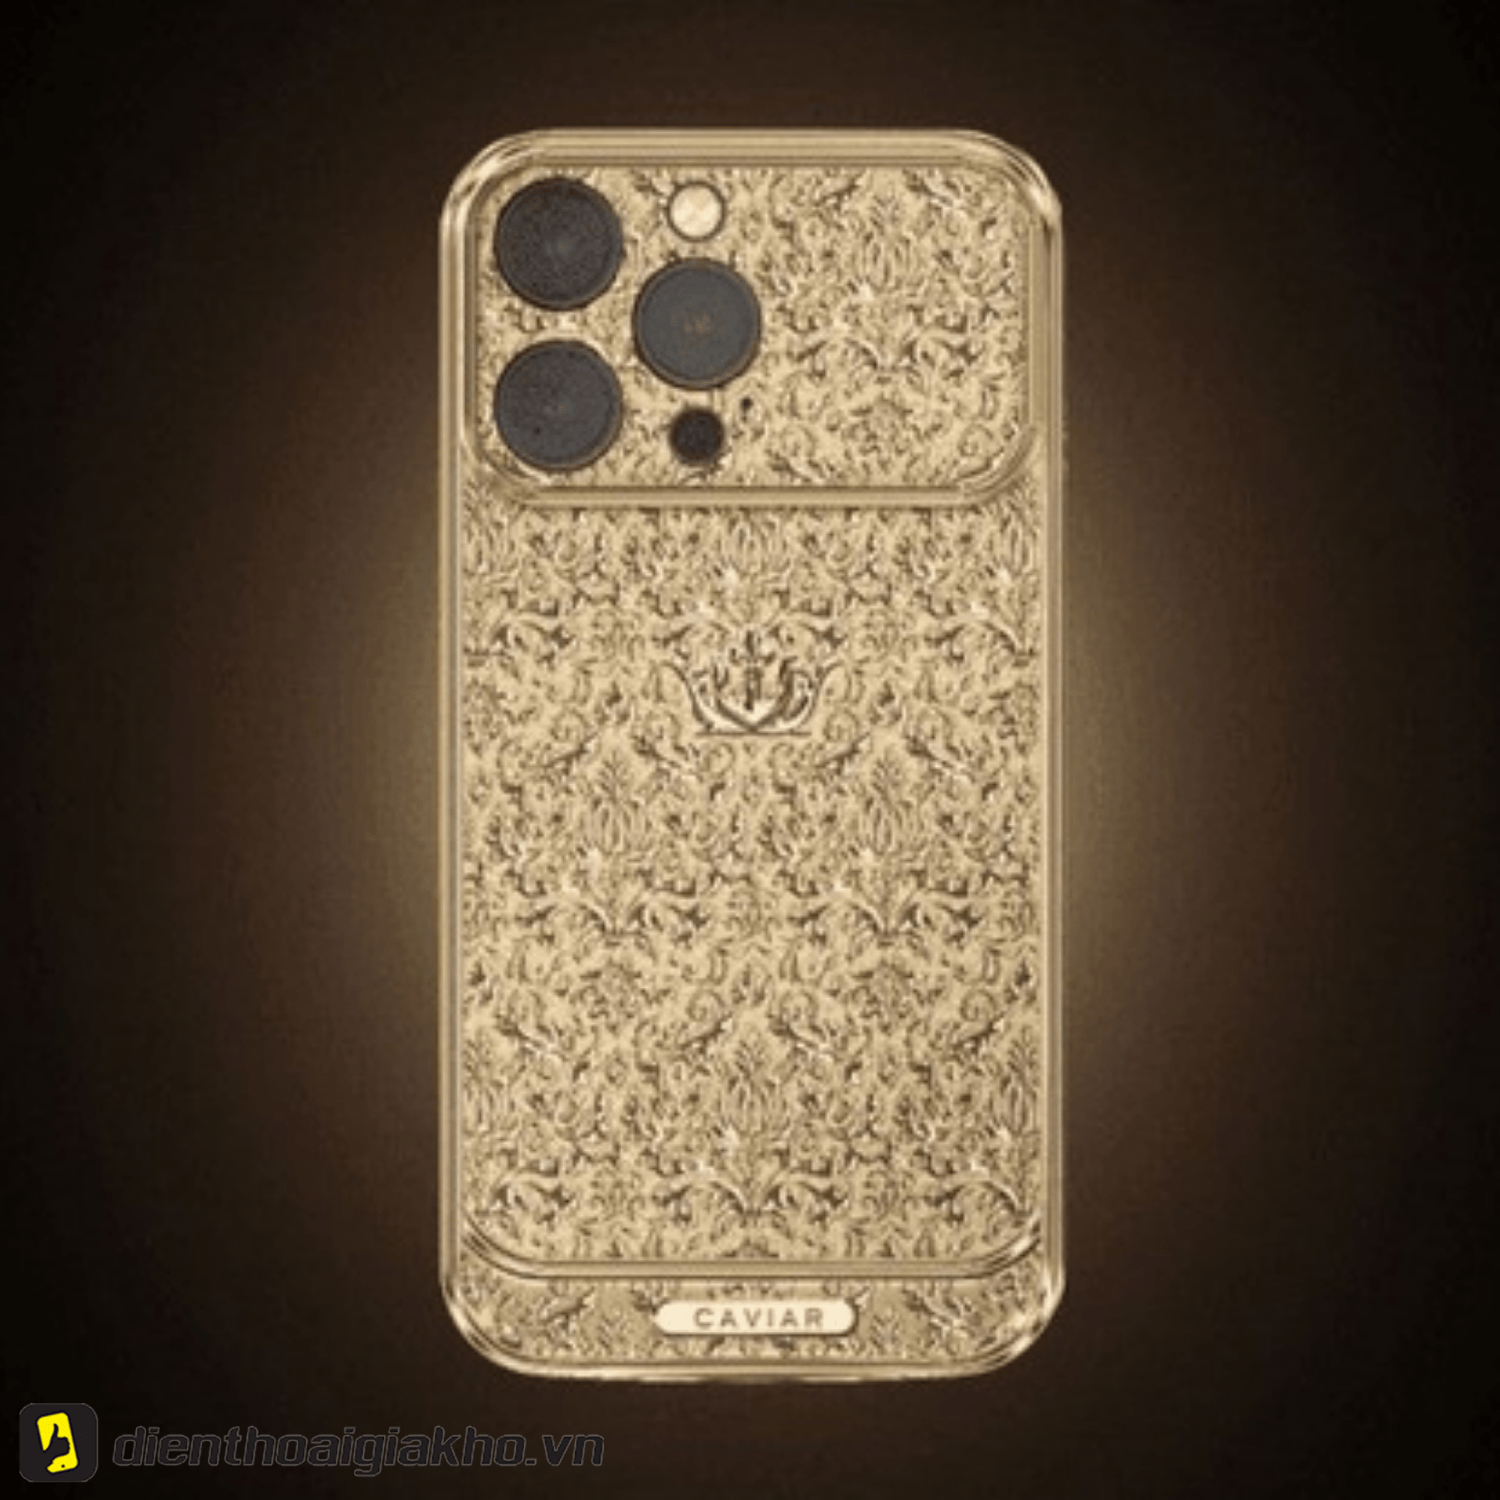 Tính đến thời điểm hiện tại, iPhone 13 được hãng Caviar phát hành làm từ vàng nguyên khối, chạm khắc tinh tế có giá cao nhất thế giới.